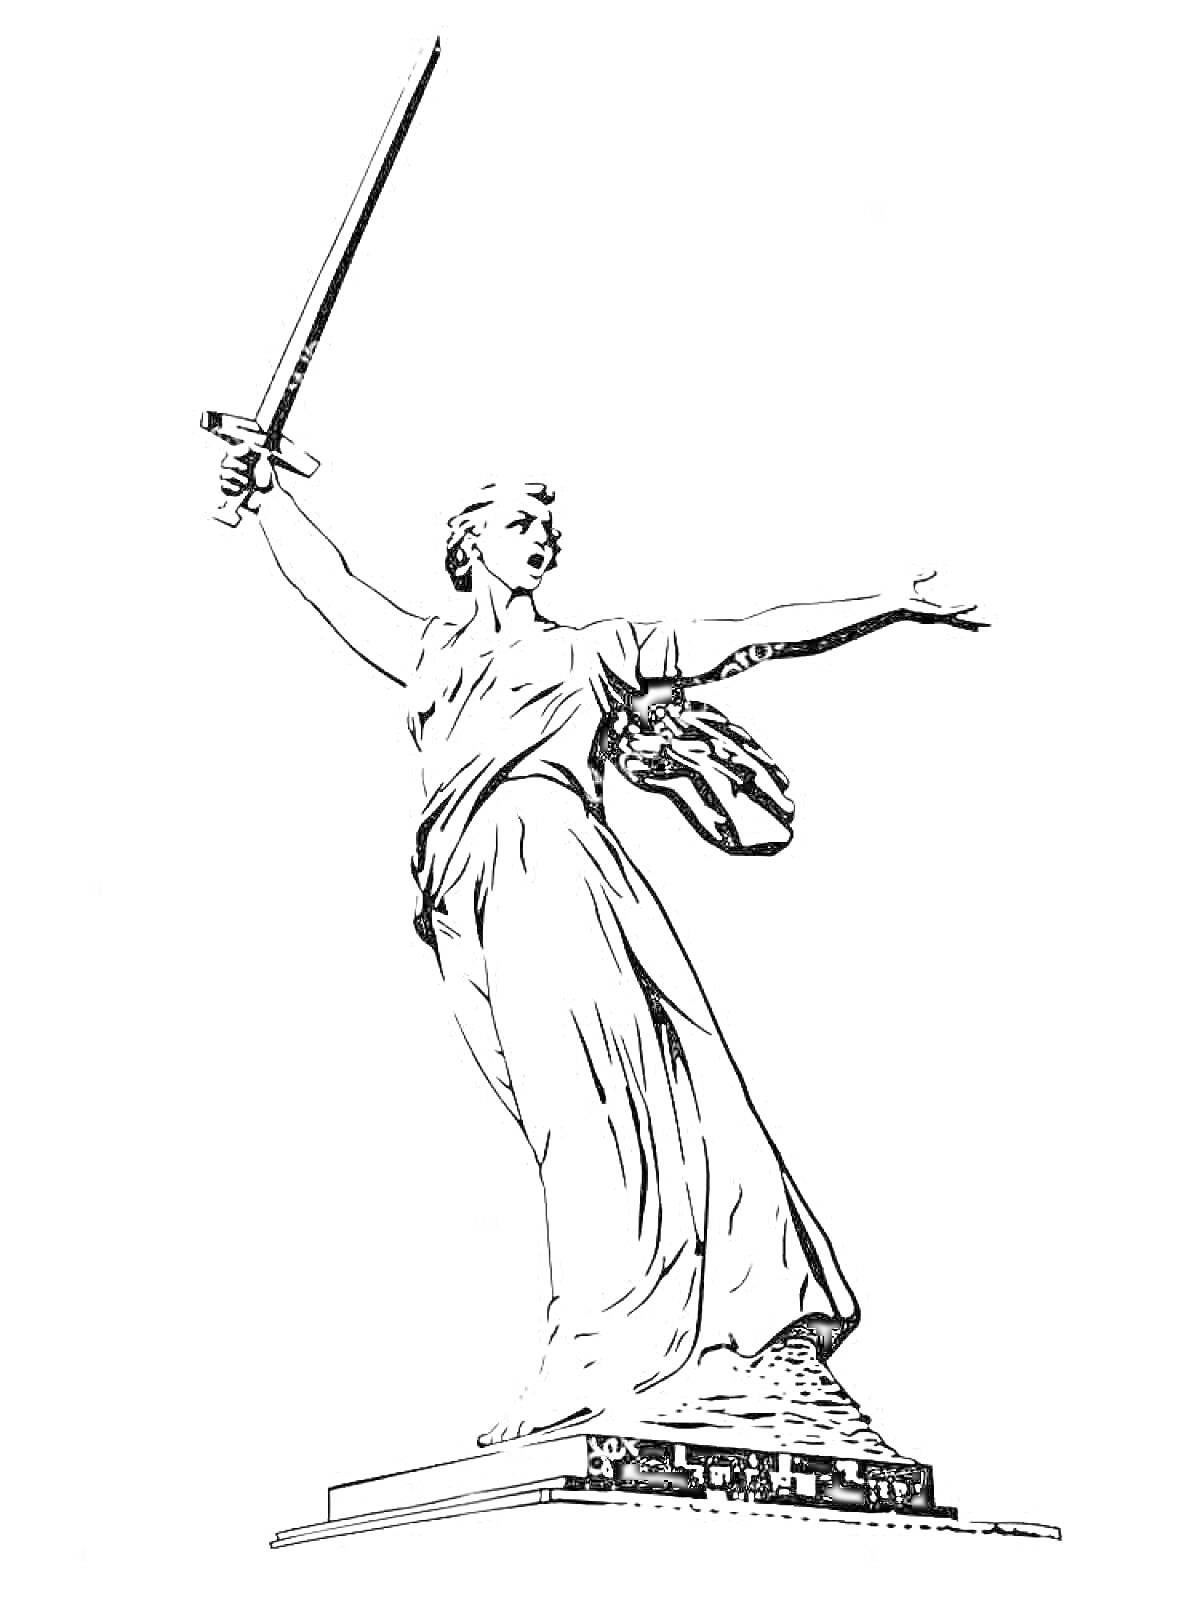 Статуя «Родина-Мать зовет» с мечом в руке на постаменте